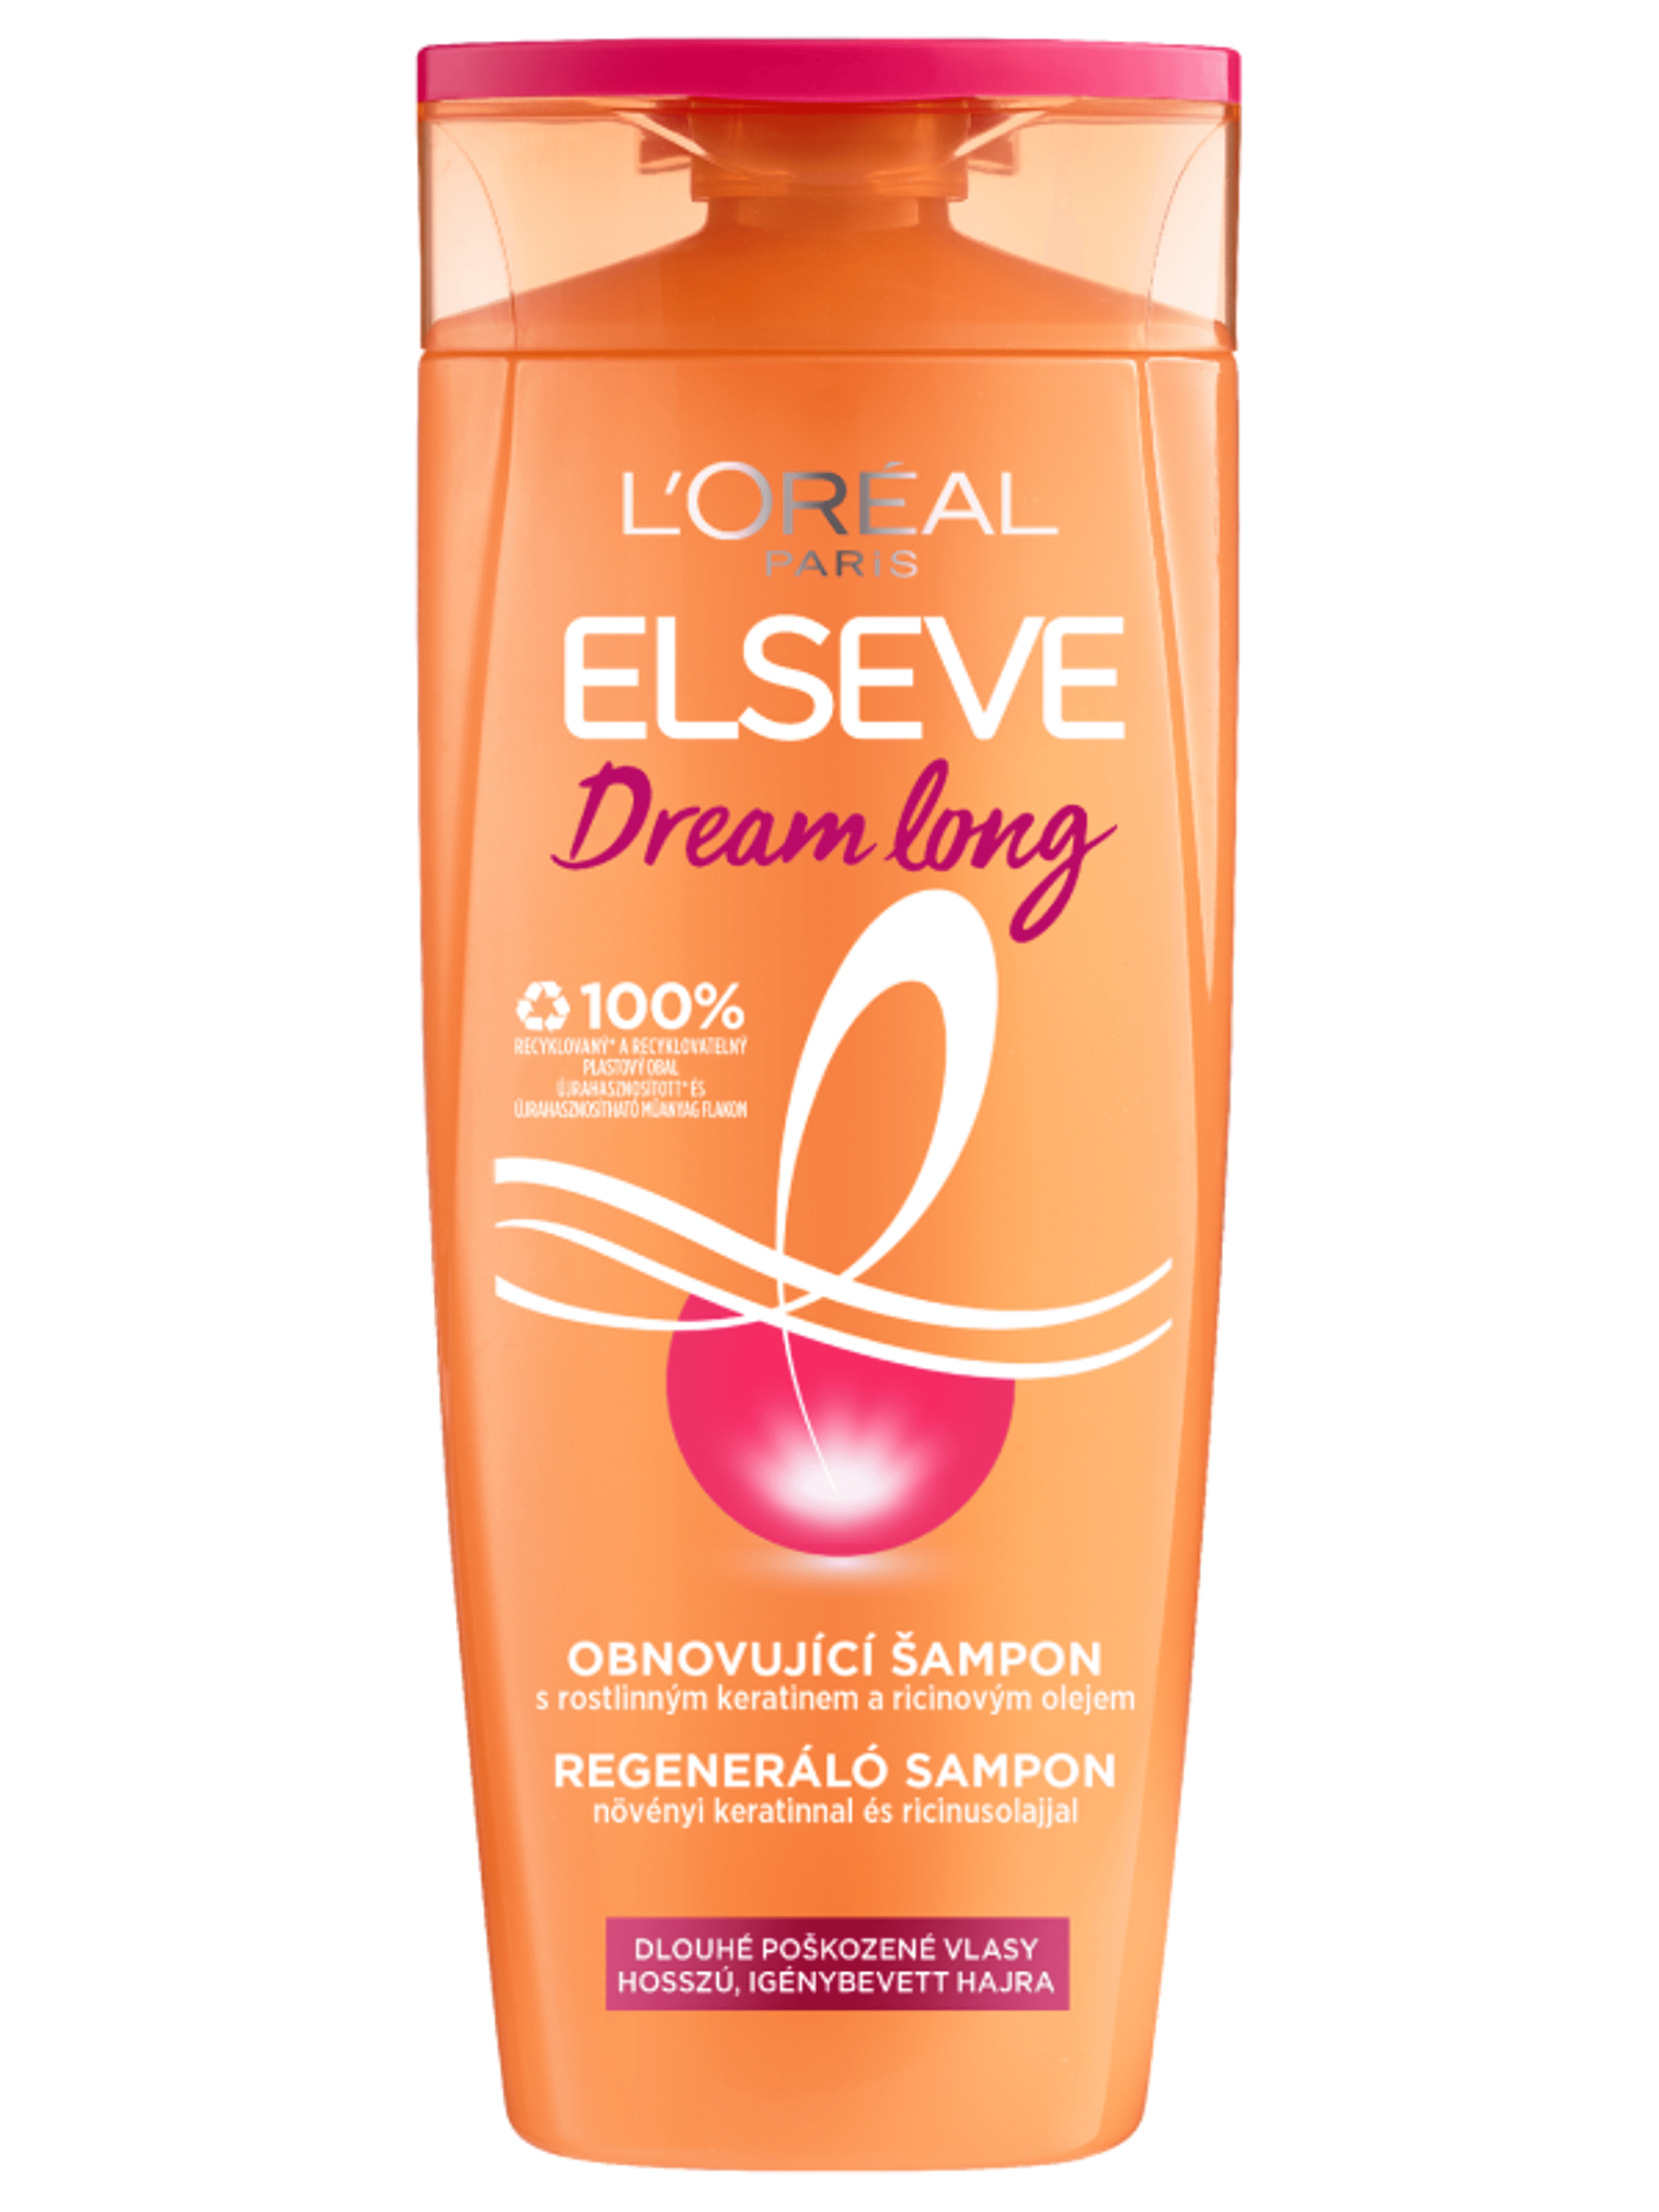 L'Oréal Paris Elseve Dream Long regeneráló sampon hosszú, igénybevett hajra - 400 ml-2